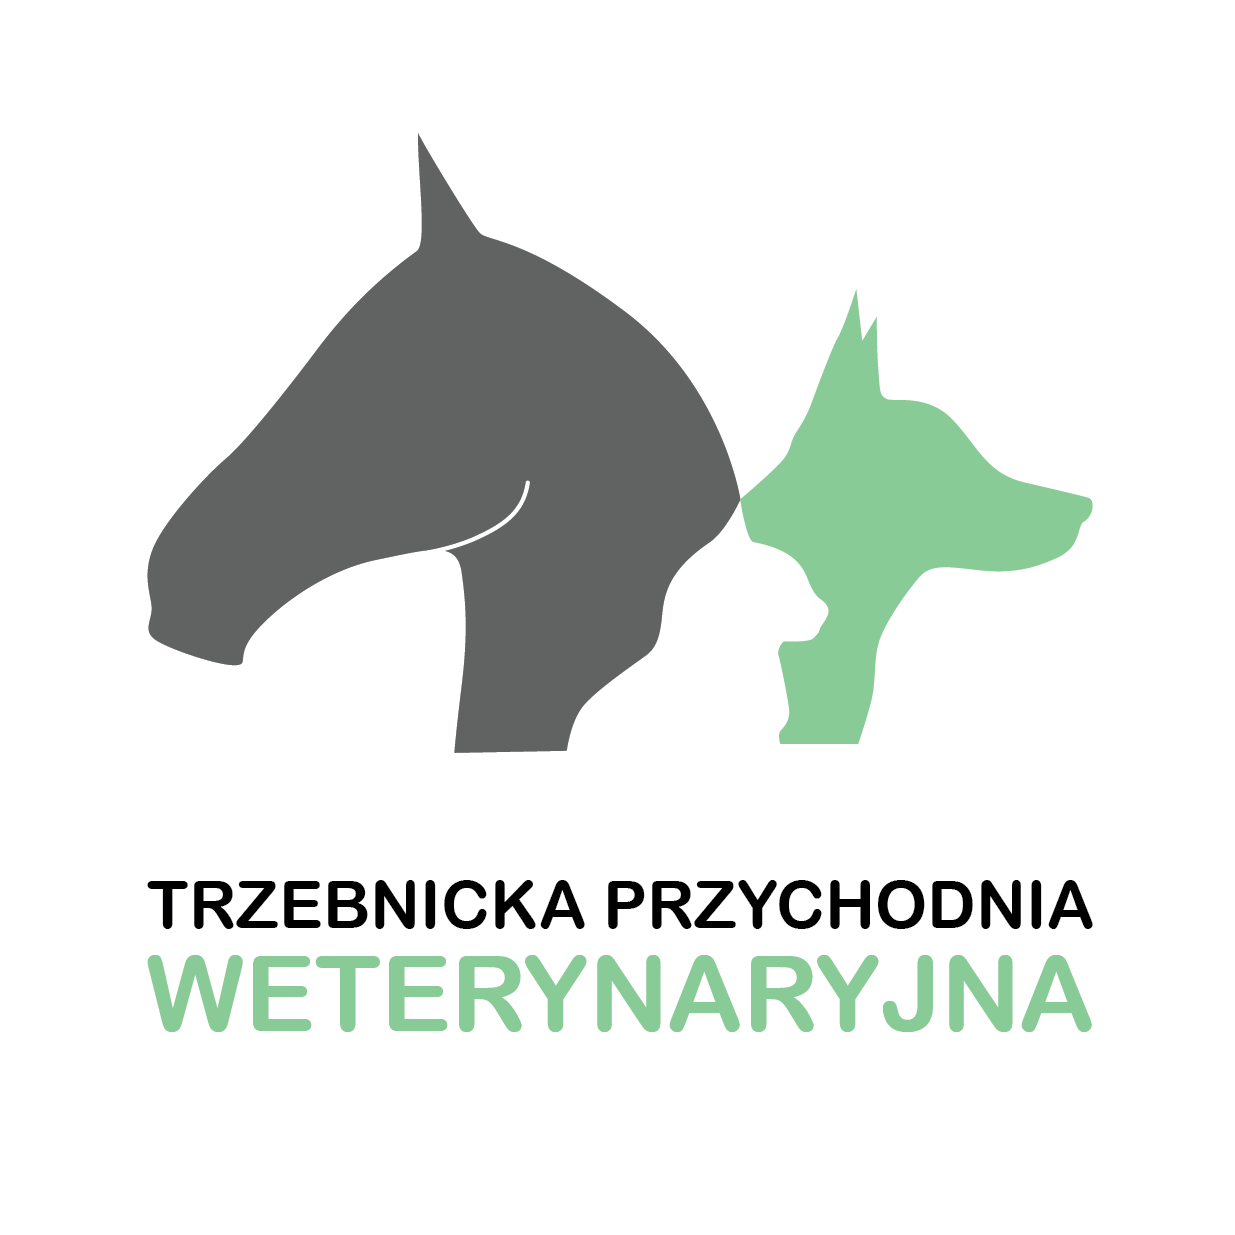 Company logo Przychodnia Weterynaryjna " Trzebnicka" s.c. Anna Cisło-Pakuluk, Julia Jurkanis